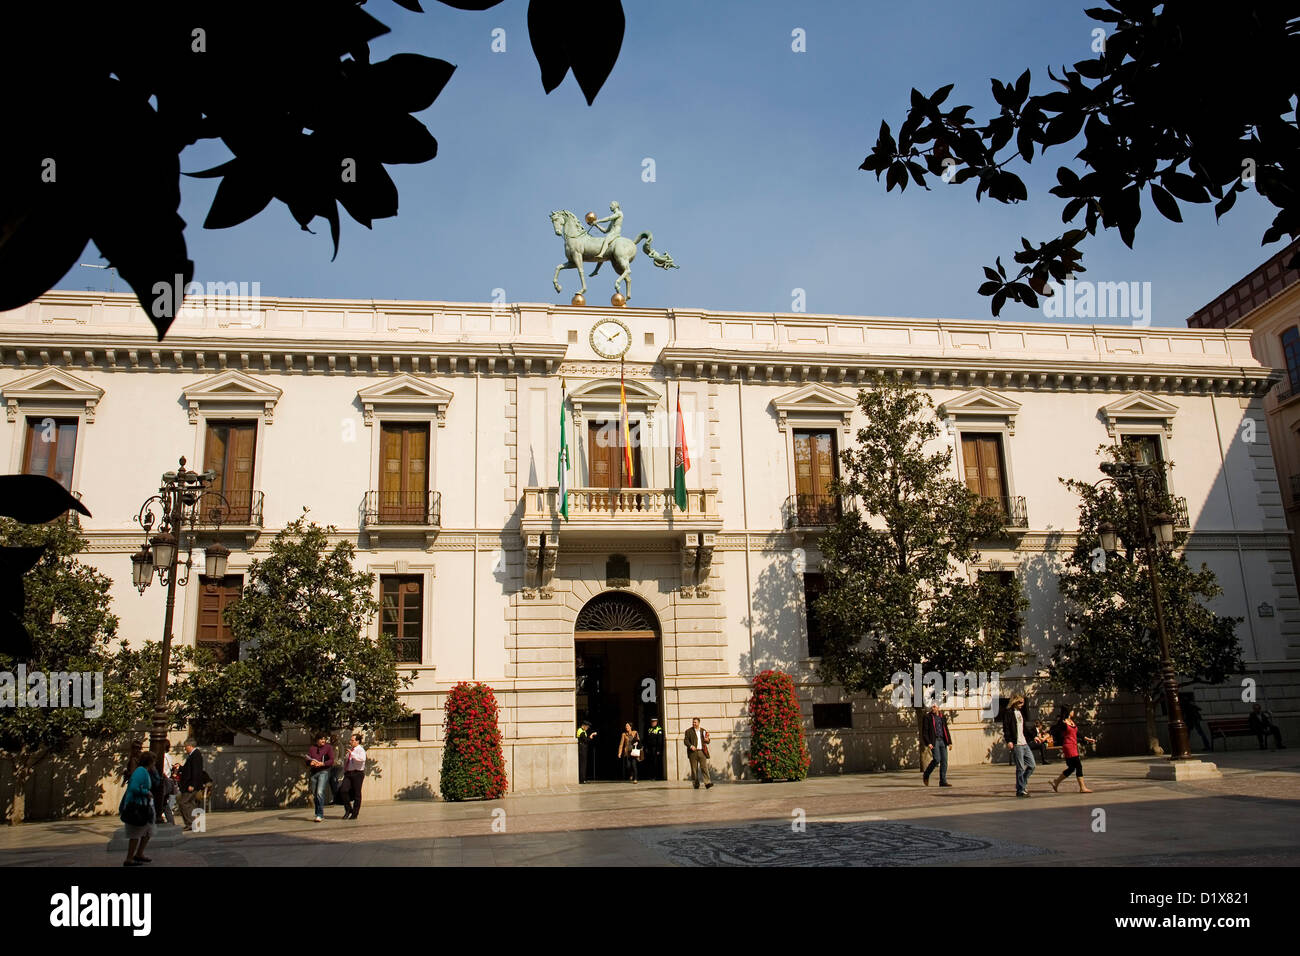 Plaza del Carmen and Town Hall Granada Andalusia Spain Stock Photo